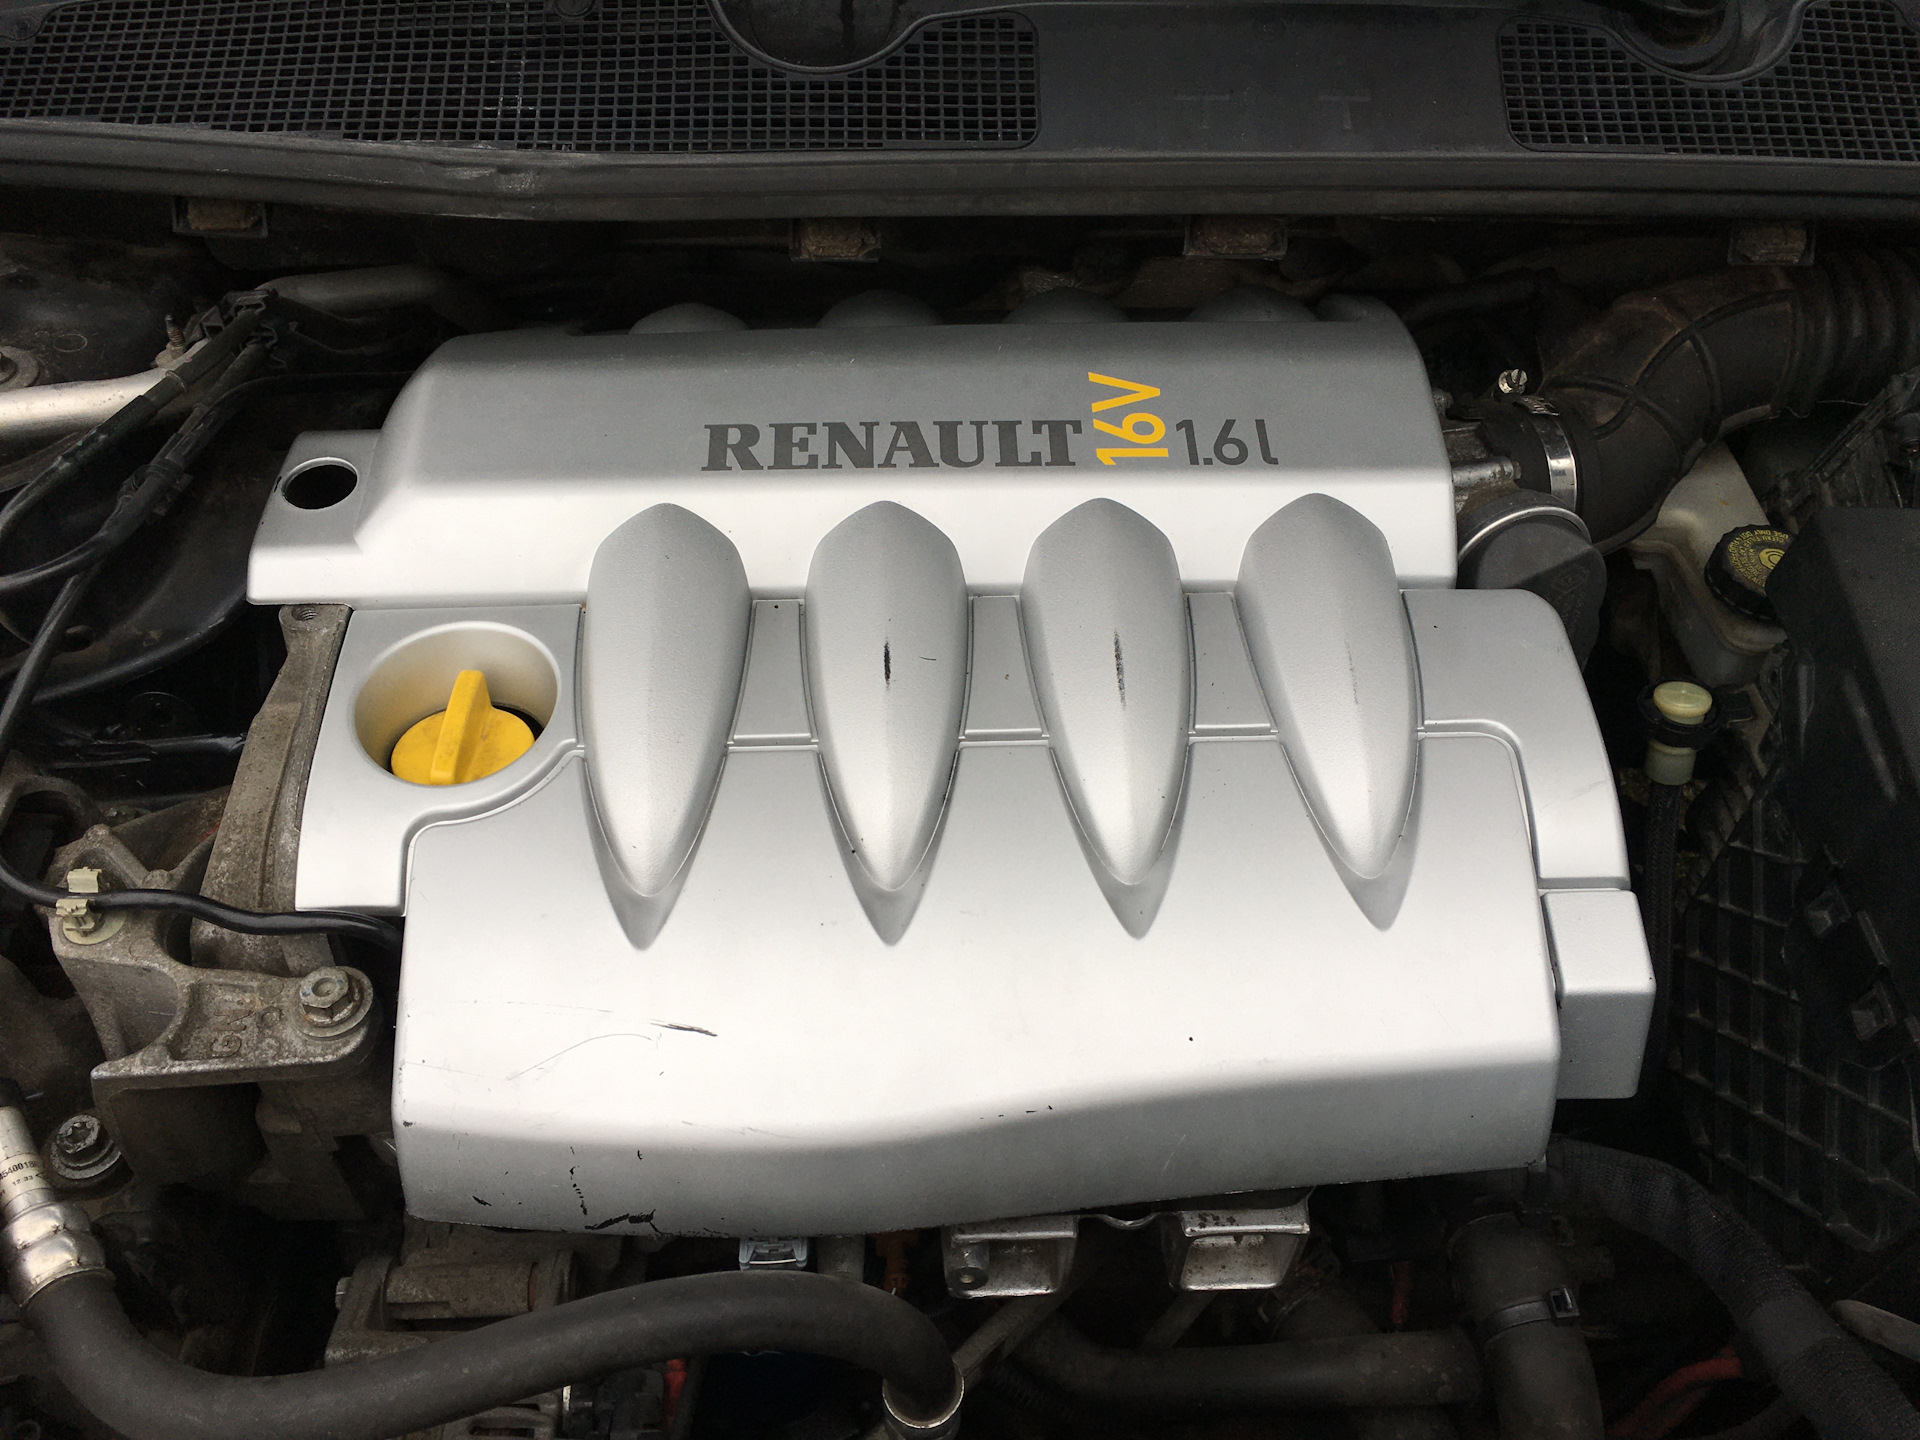 Купить двигатель рено флюенс 1.6. Крышка двигателя Renault Fluence 1.6. Декоративная крышка двигателя Рено Флюенс 1.6. Декоративная накладка на двигатель Рено Флюенс 1.6. Мотор Рено Флюенс 1.6.